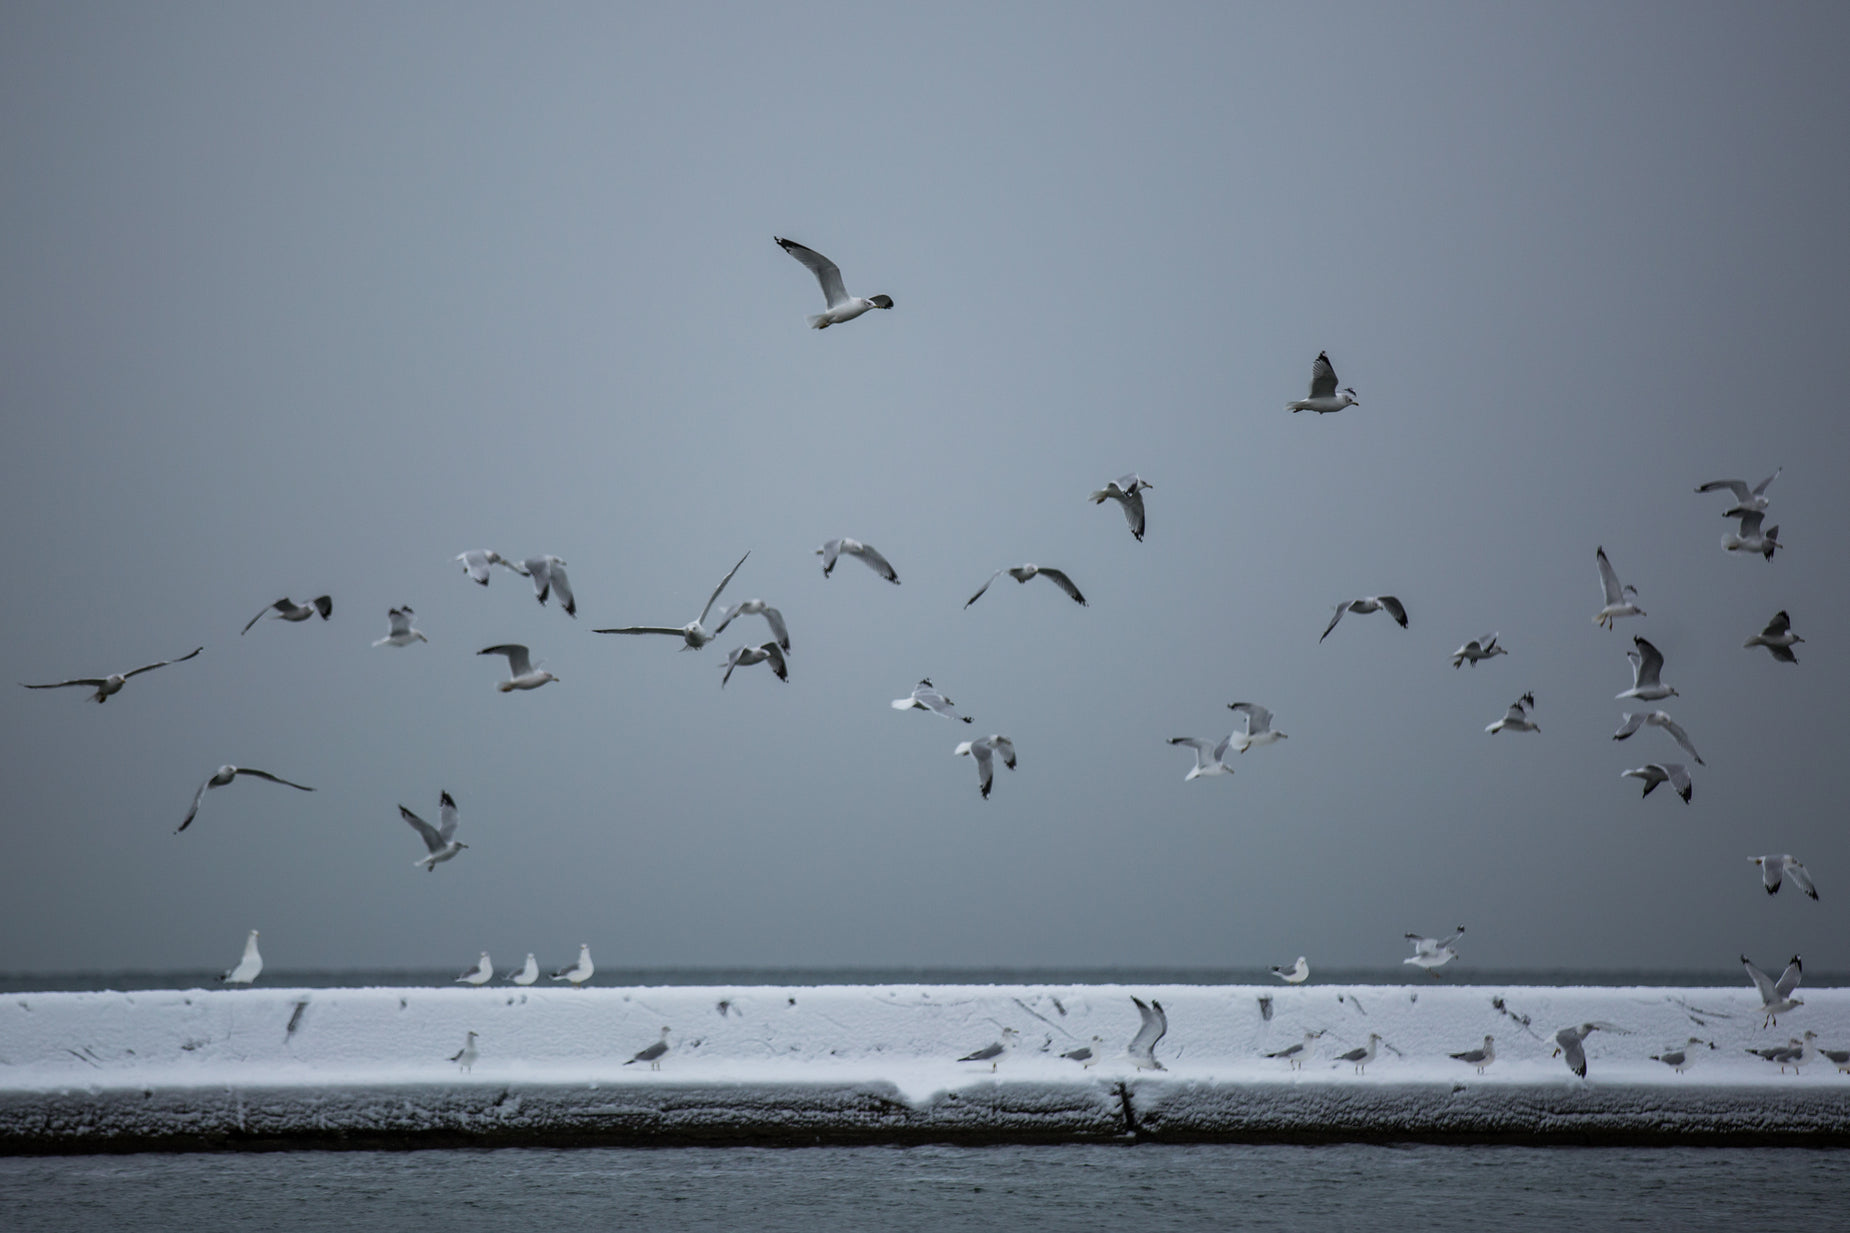 a flock of birds flying over a snowy beach